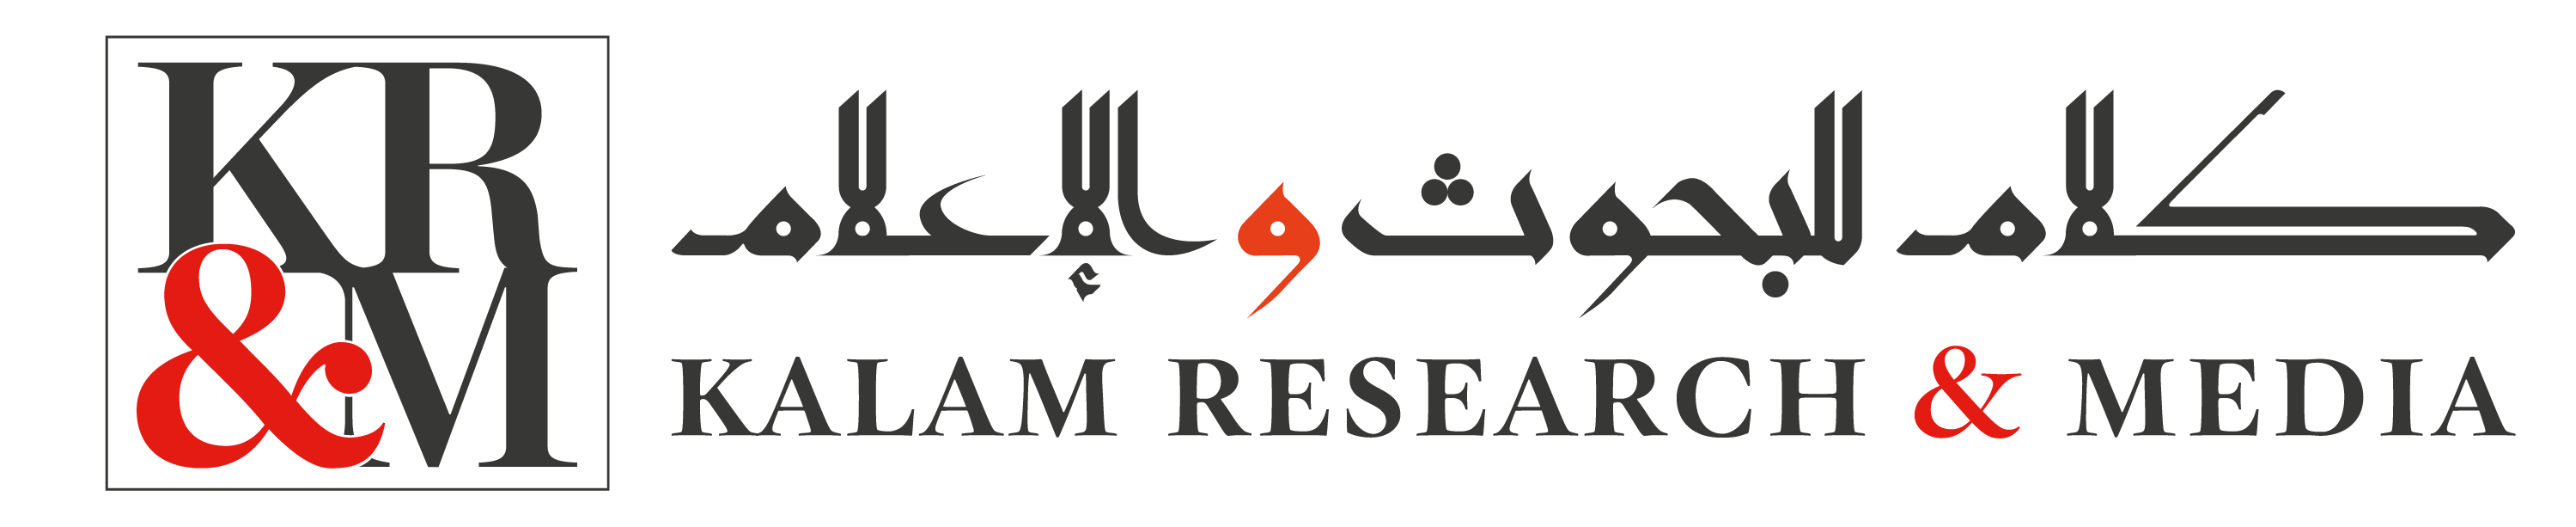 Kalam Research Media Logo